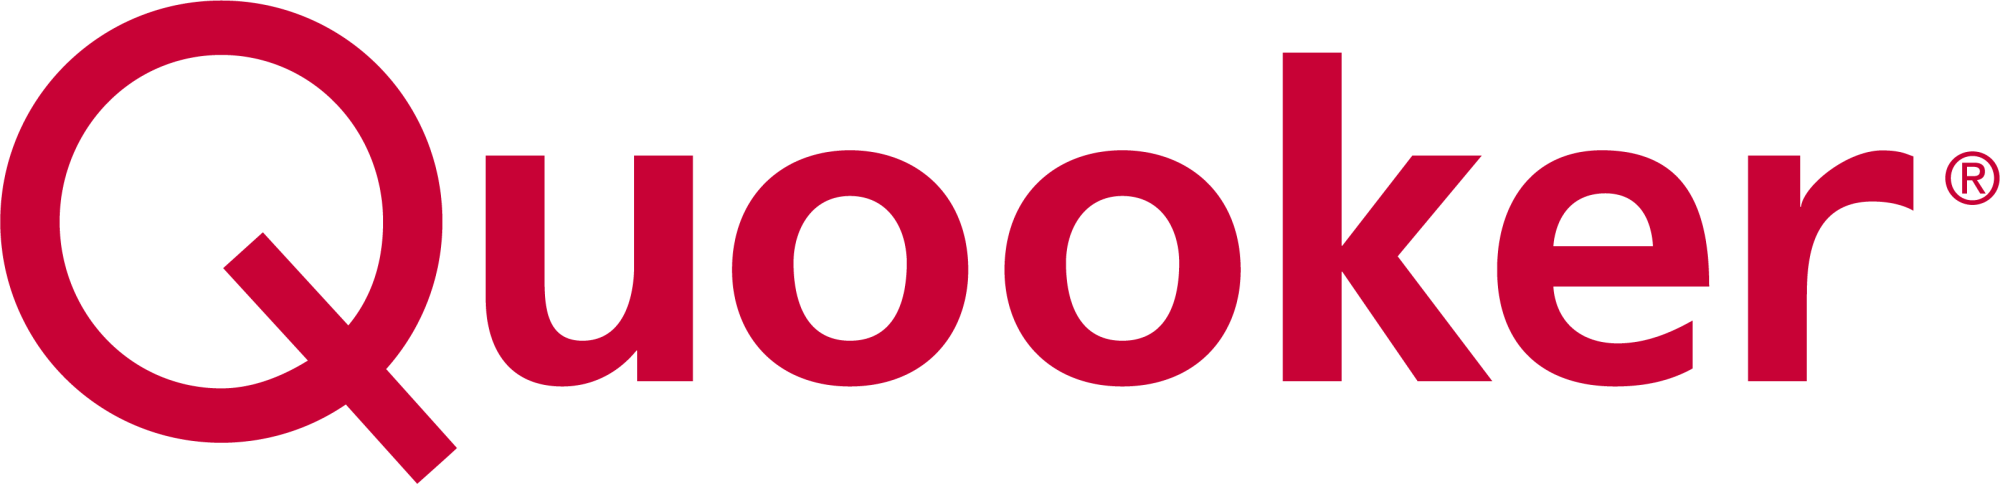 Quooker Logo Wasserhahn